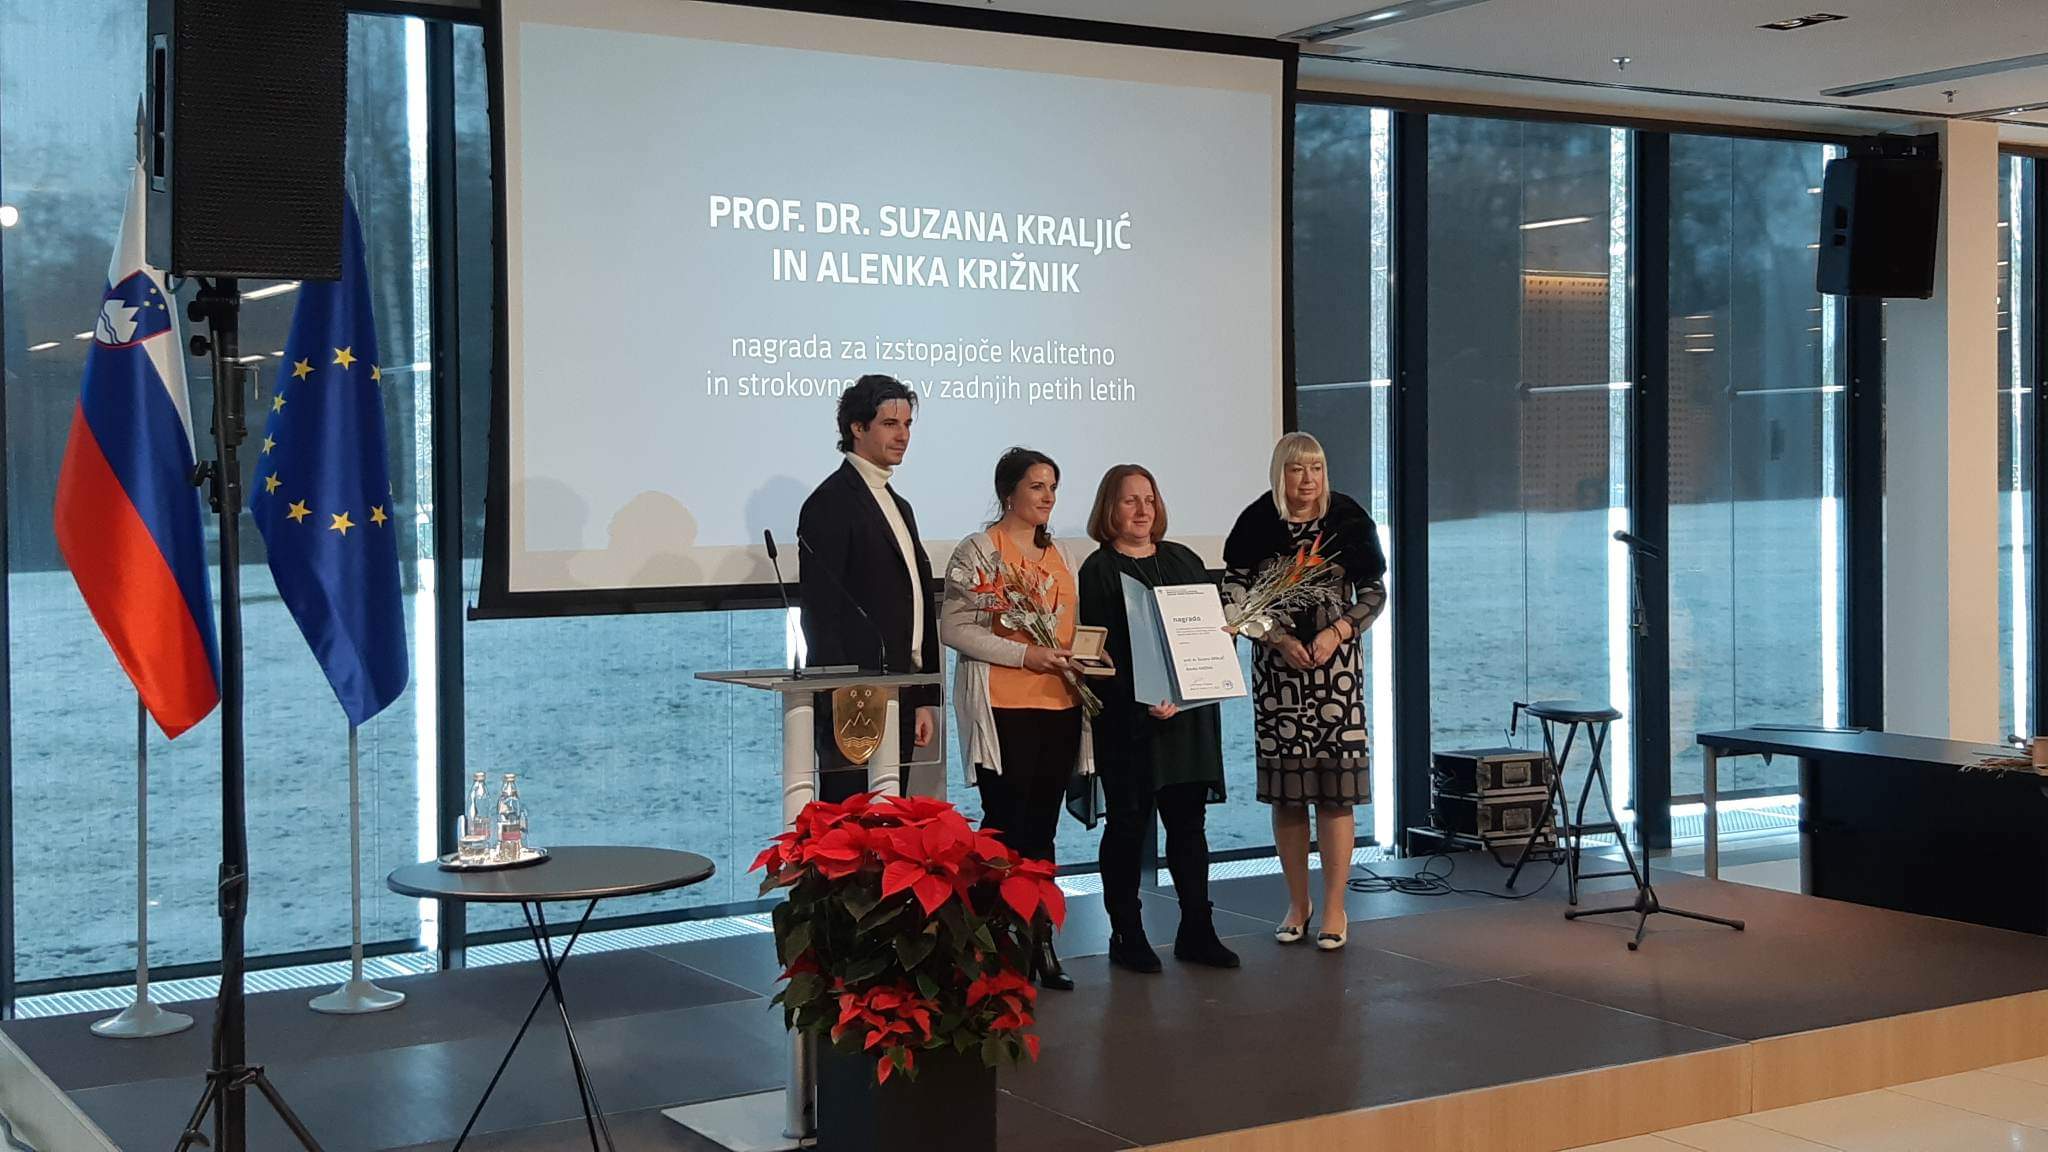 Nagrada za izstopajoče kvalitetno in strokovno delo na področju socialnega varstva v zadnjih petih letih v roke prof. dr. Suzani KRALJIĆ